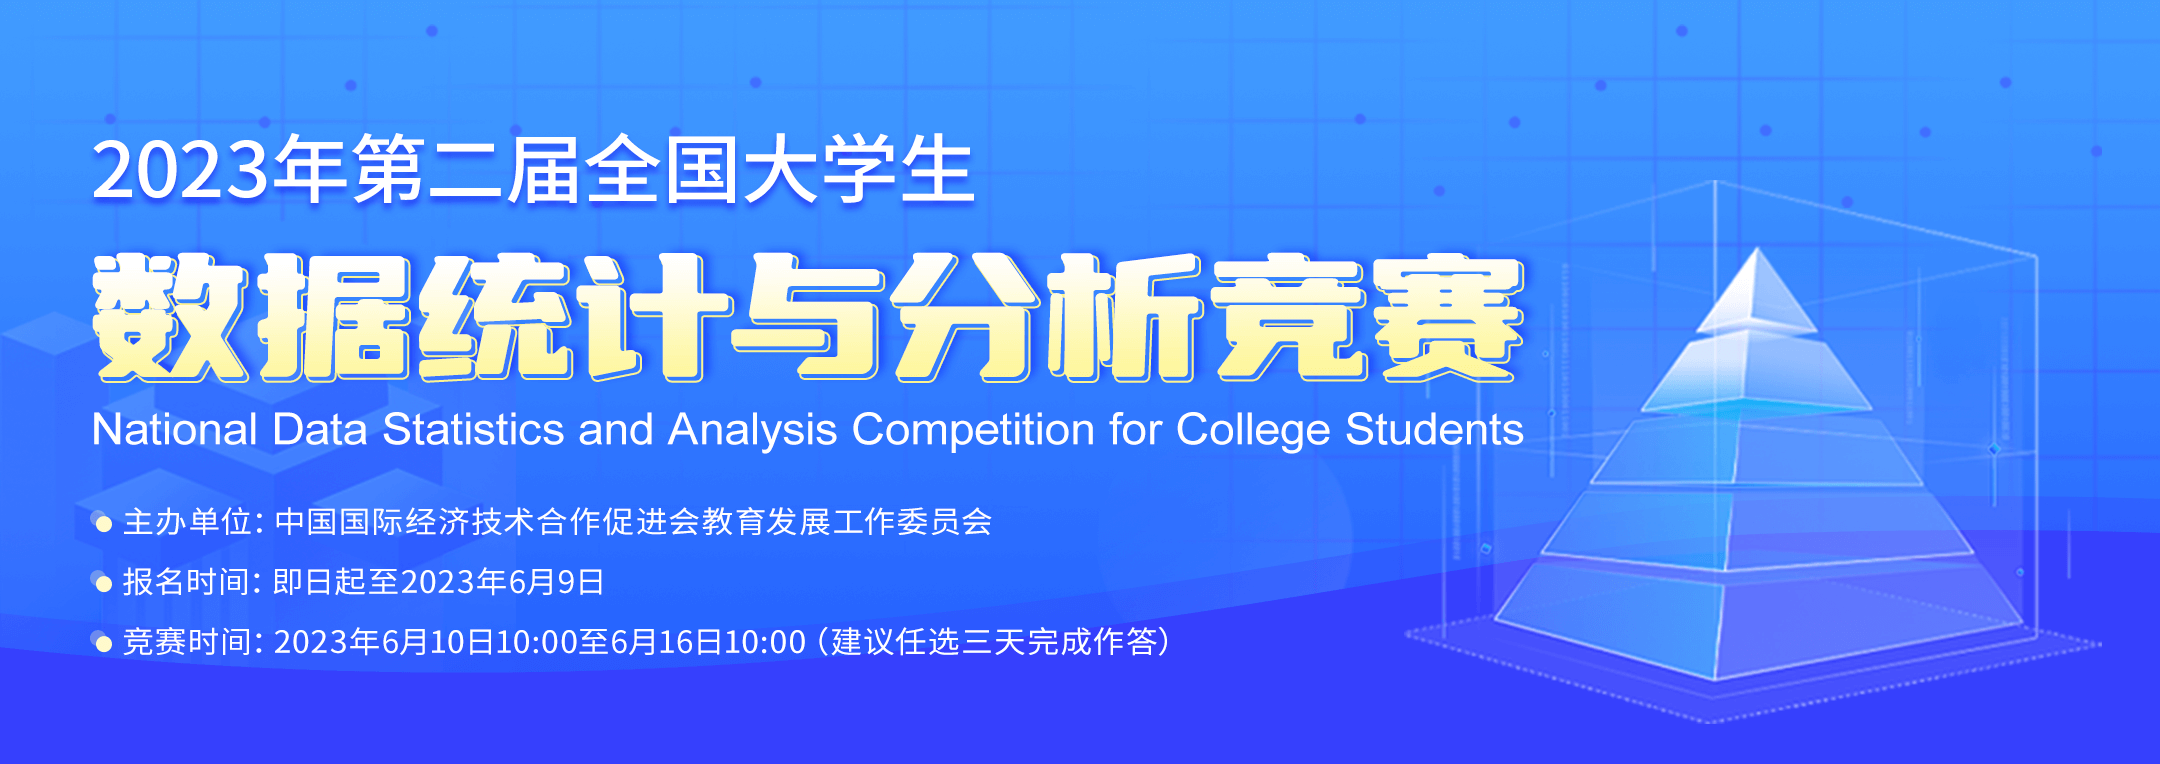 2023年第二届全国大学生数据统计与分析竞赛-详情页banner1080x382px.png